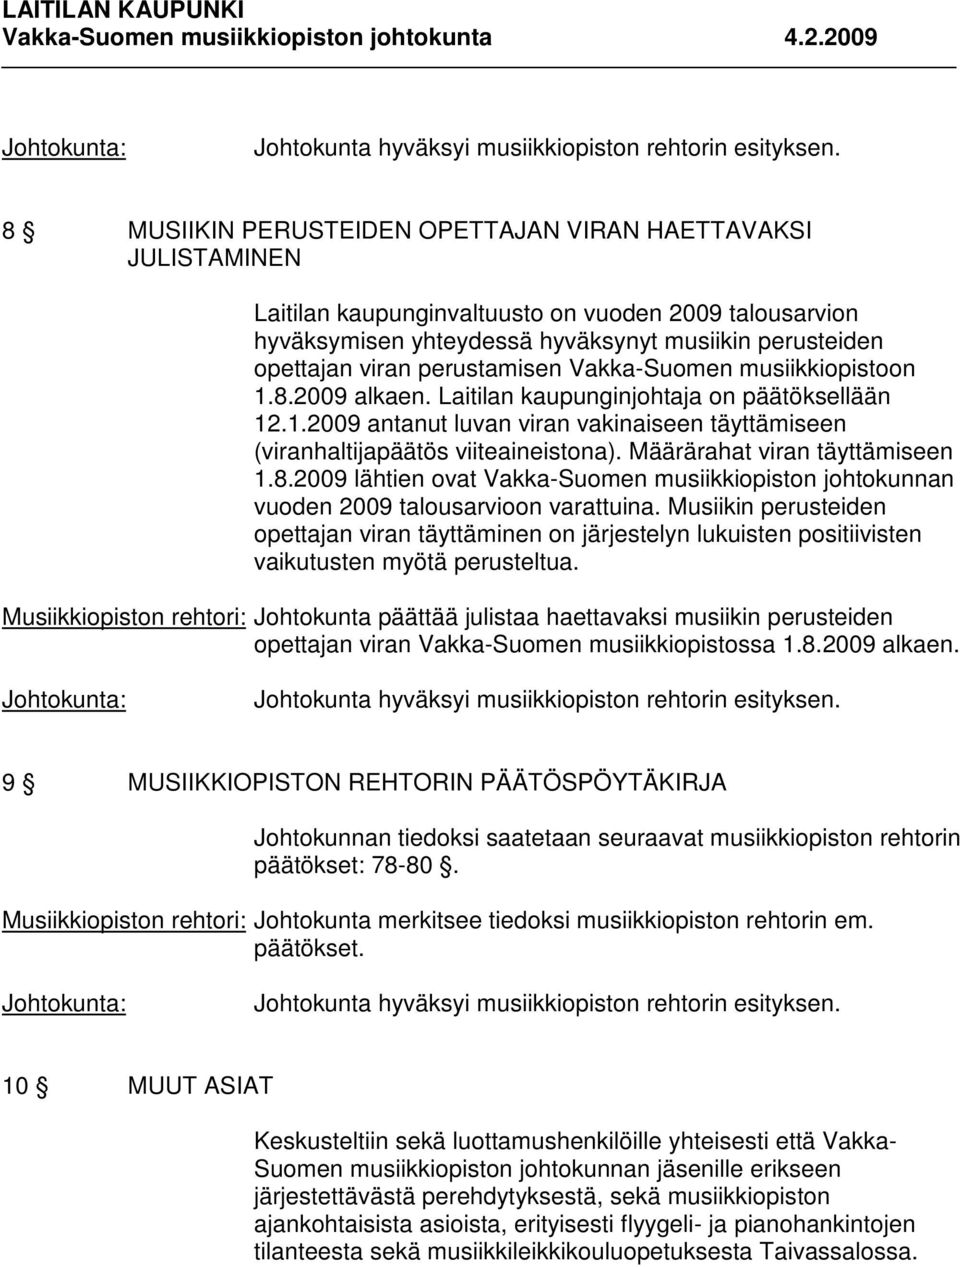 Määrärahat viran täyttämiseen 1.8.2009 lähtien ovat Vakka-Suomen musiikkiopiston johtokunnan vuoden 2009 talousarvioon varattuina.